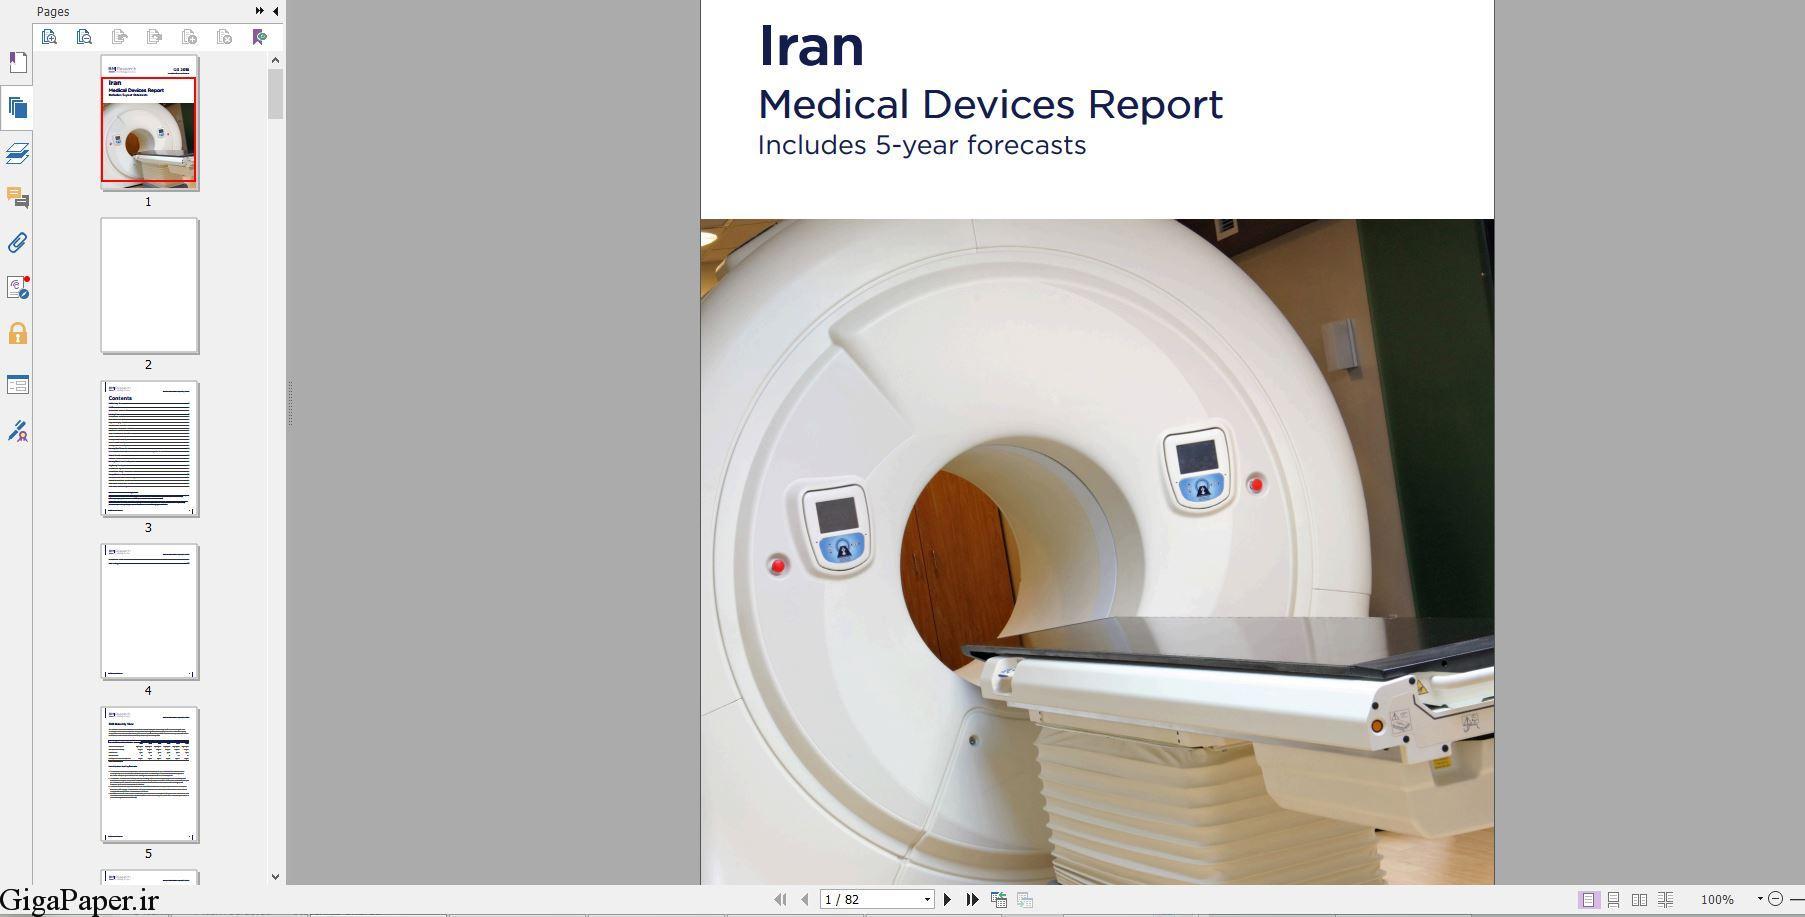  دانلود گزارش Iran Medical Devices Report Q3 2018 گزارش تحلیل صنعت تجهیزات پزشکی ایران - فصل سوم 2018 همراه با پیش‌بینی‌های 5 ساله دریافت از bmiresearch.com